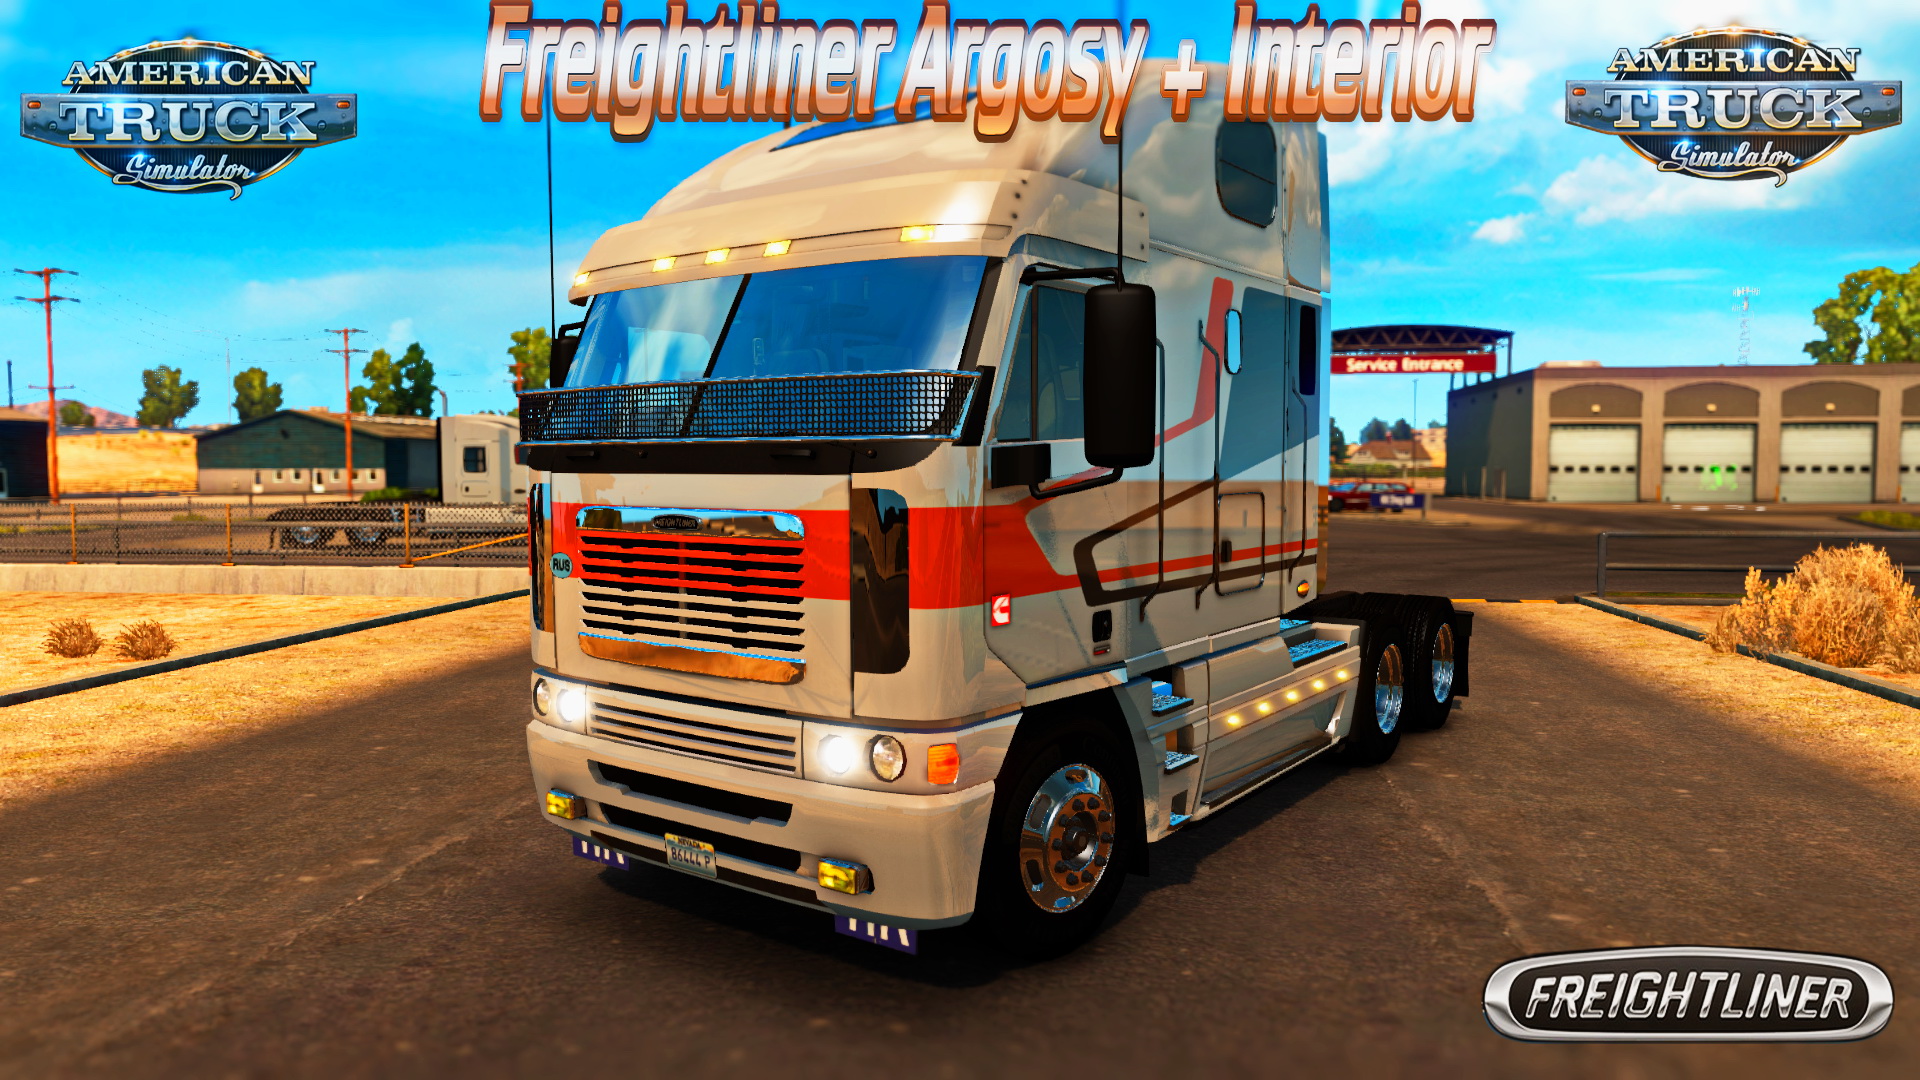 Freightliner Argosy + Interior v3.0 for ATS (American Truck Simulator)